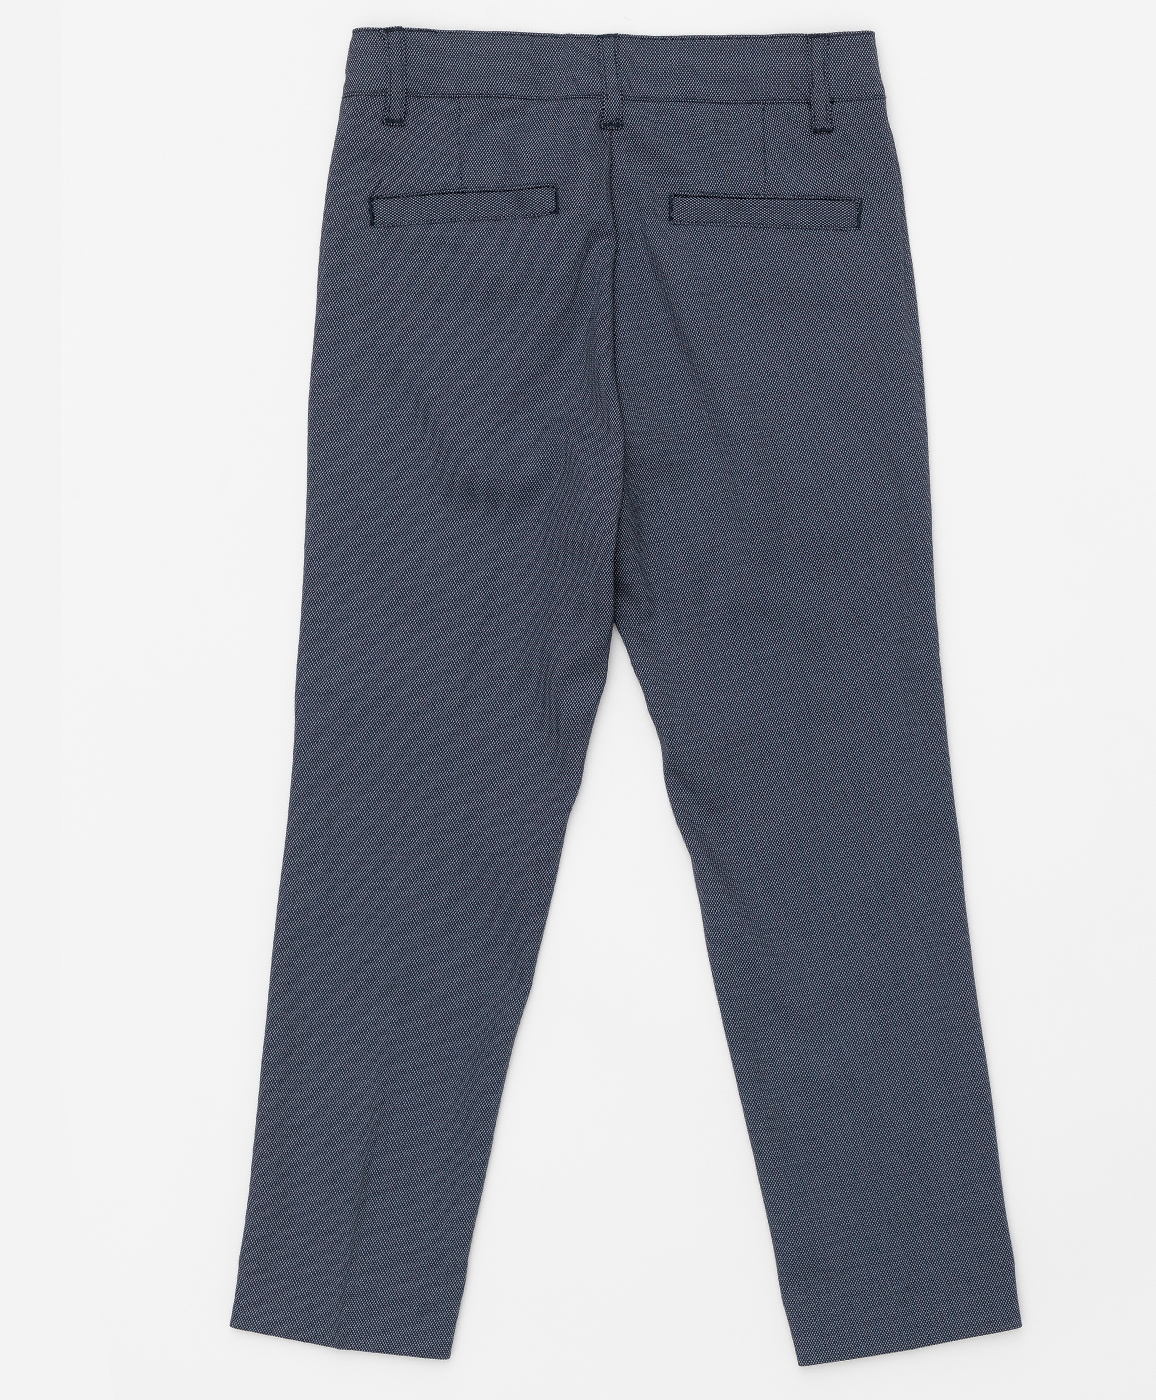 Серые брюки с узором "точка" Button Blue 220BBBMP63010800, размер 122, цвет серый regular fit / прямые - фото 2